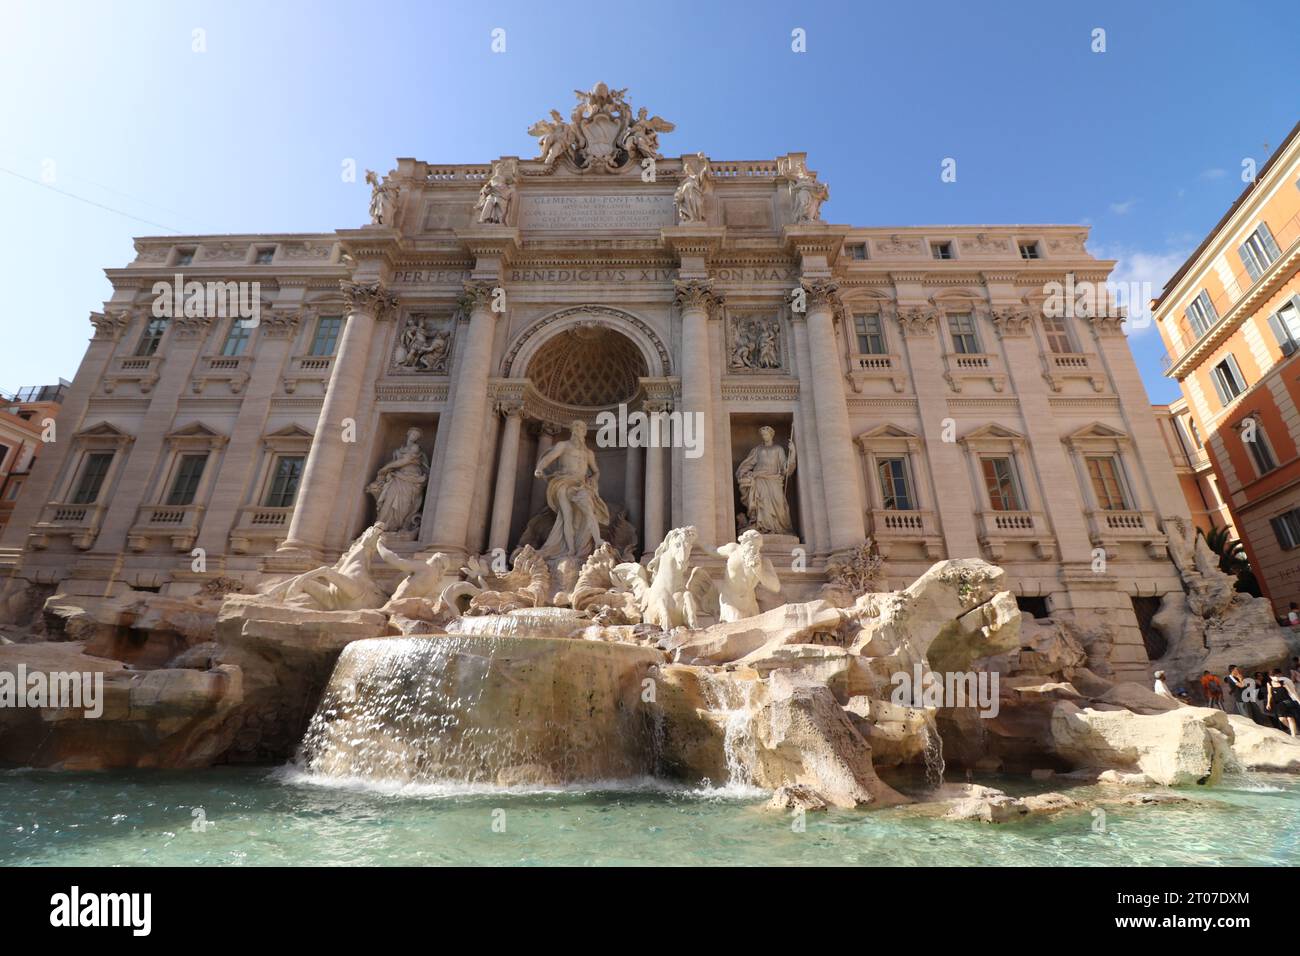 Fontaine de Trevi, Rome, Italie. Image citadine de Rome, Italie avec la célèbre fontaine de Trevi par temps ensoleillé. Banque D'Images